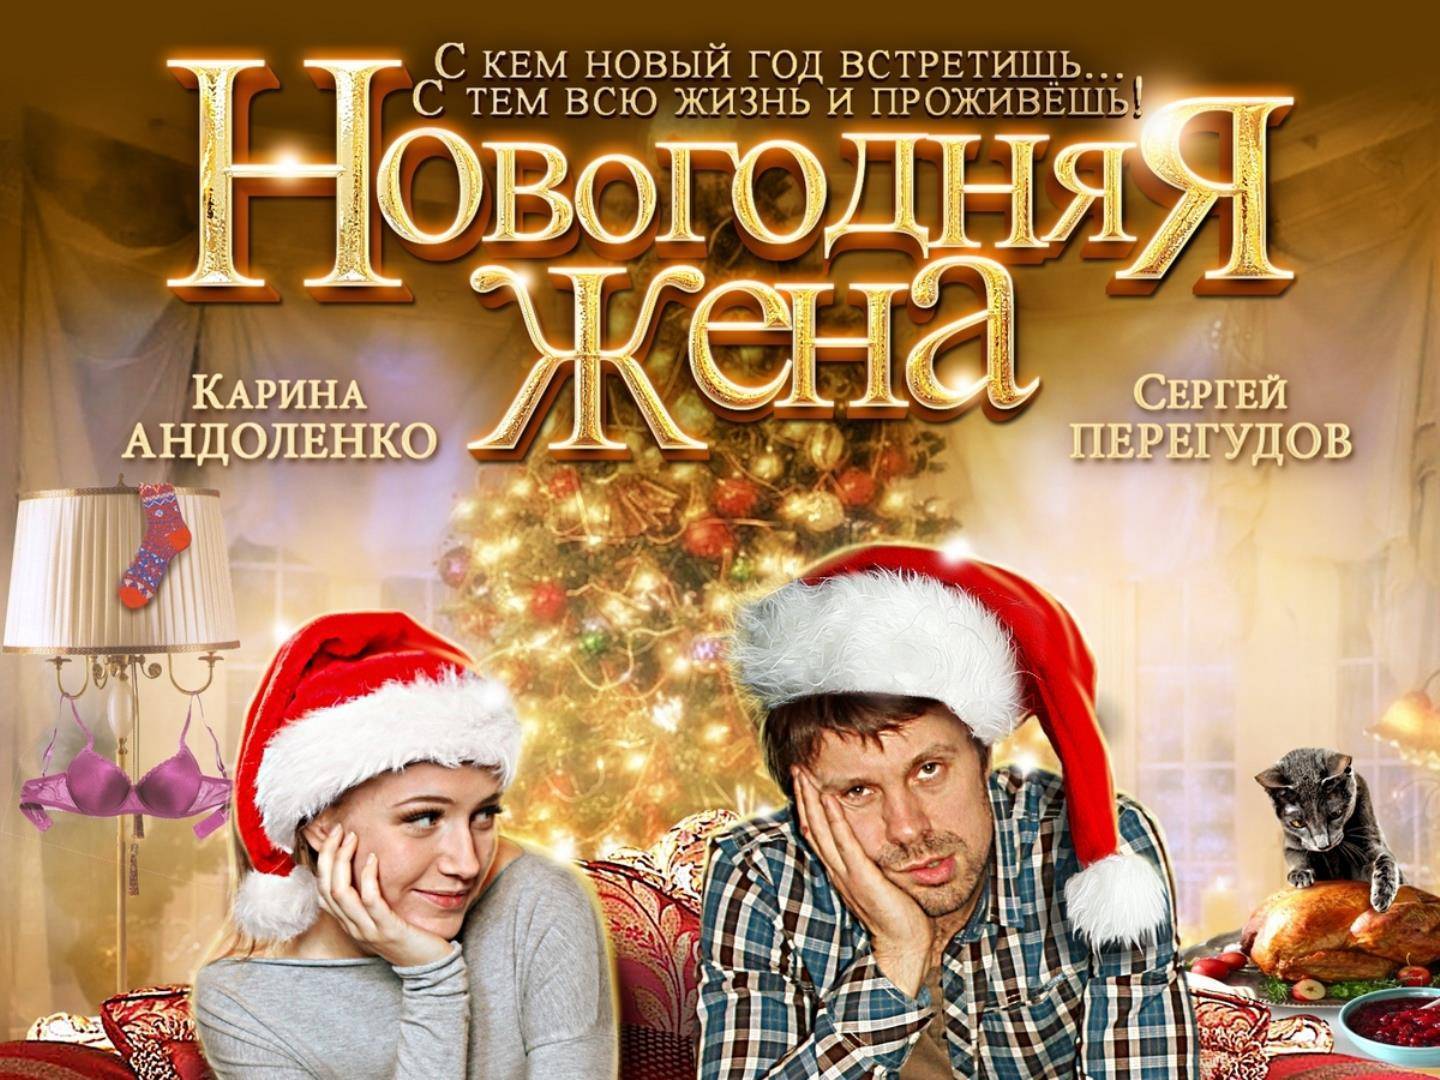 Русские новогодние фильмы – 30 лучших новинок последних лет